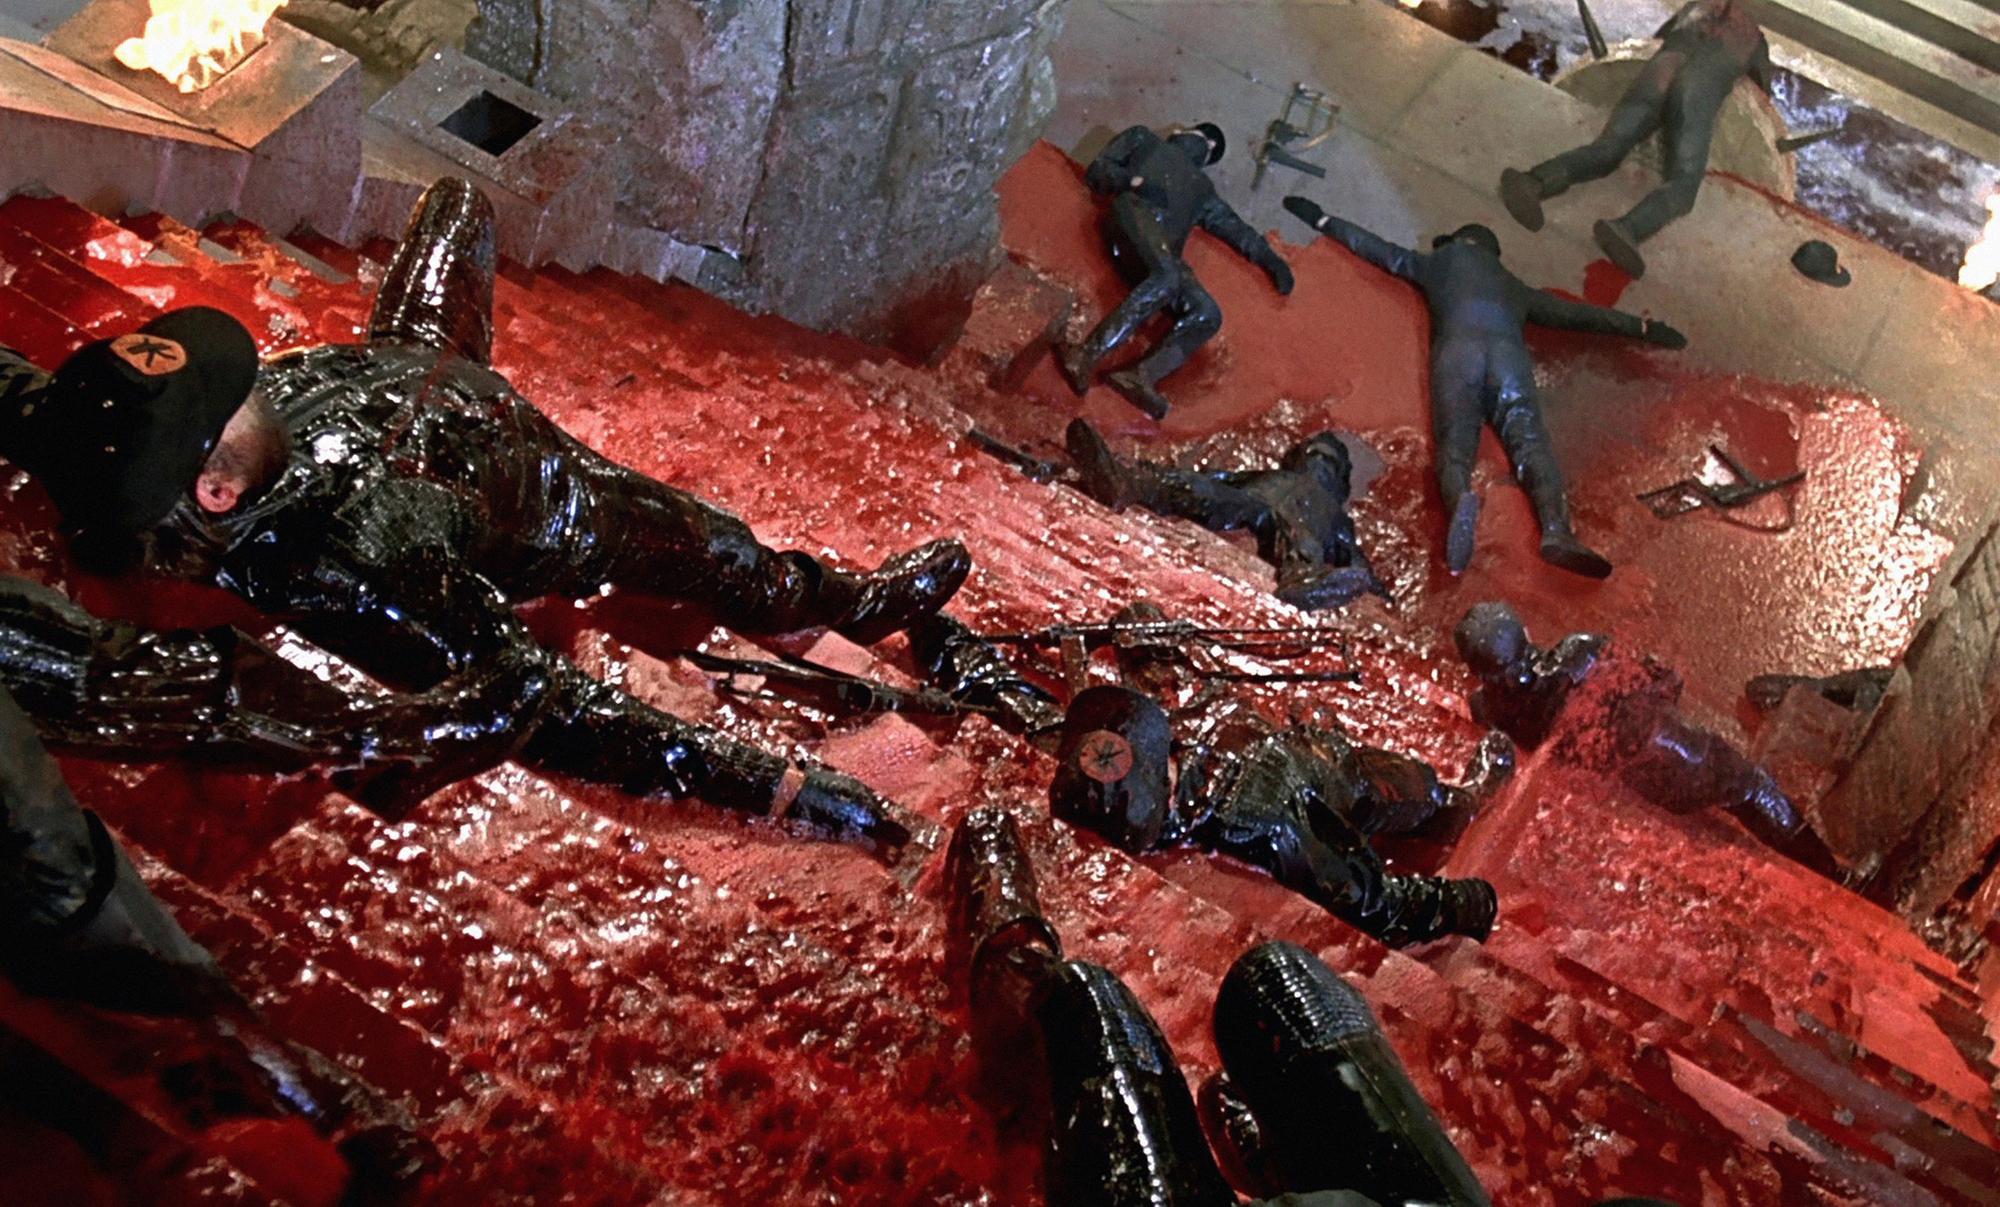 La scène du massacre dans le temple mexicain dans "Le Magnifique" a demandé des centaines de litres de sang de cheval. [Collection ChristopheL via AFP]